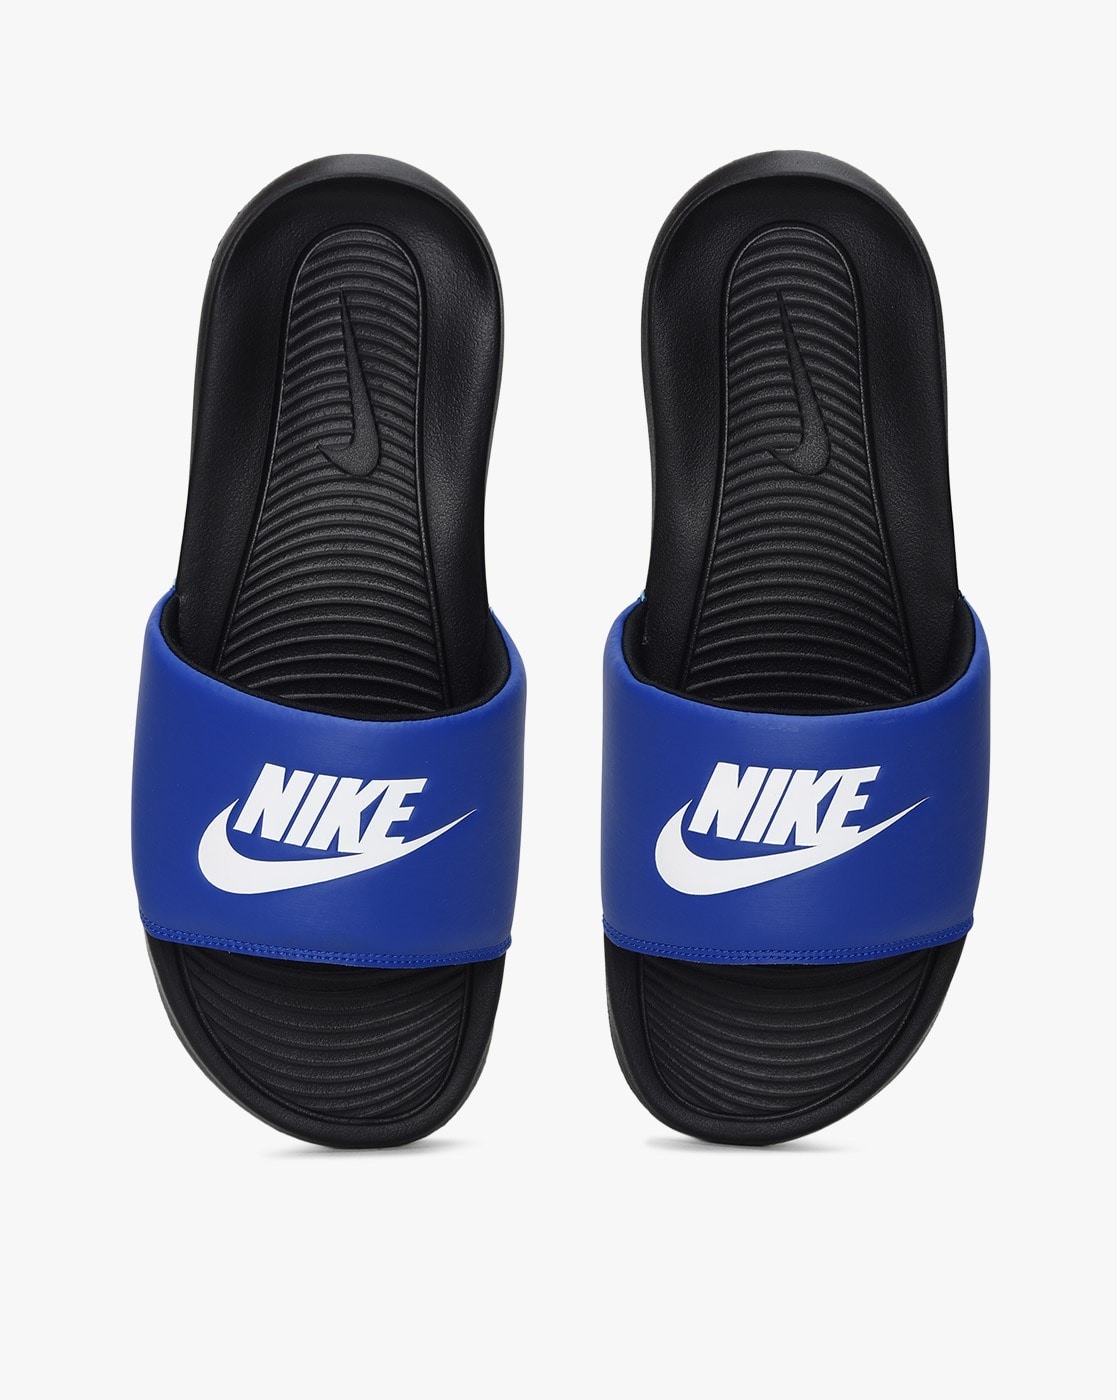 Buy Nike Men's Chroma Thong II White,Deep Red Flip Flops Thong Sandals -12  UK/India (47.5 EU)(13 US) at Amazon.in